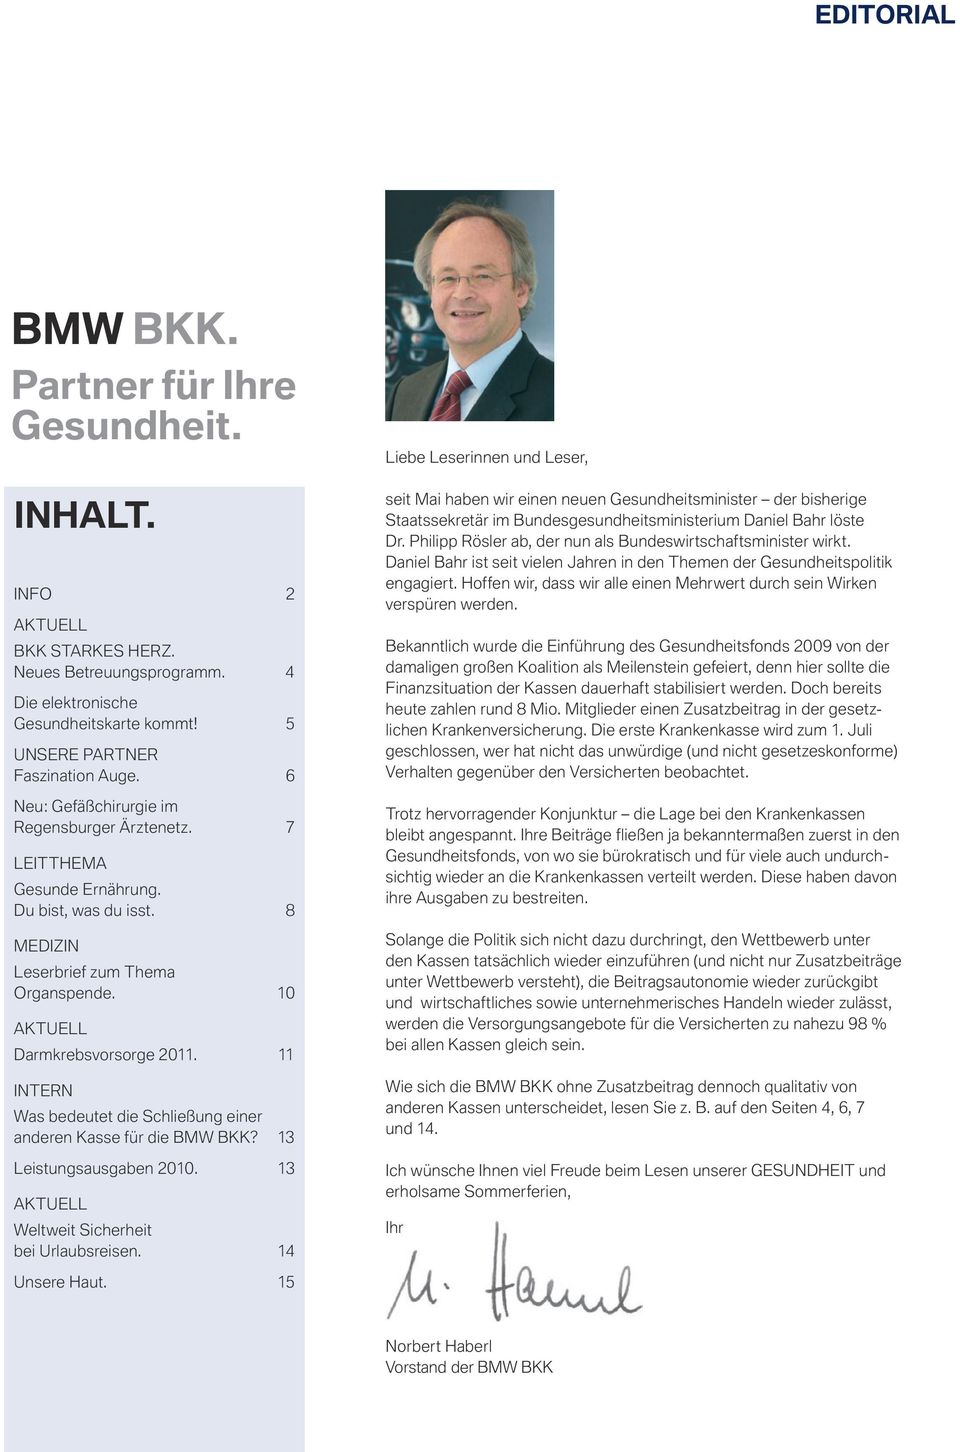 11 INTERN Was bedeutet die Schließung einer anderen Kasse für die BMW BKK? 13 Leistungsausgaben 2010. 13 AKTUELL Weltweit Sicherheit bei Urlaubsreisen.